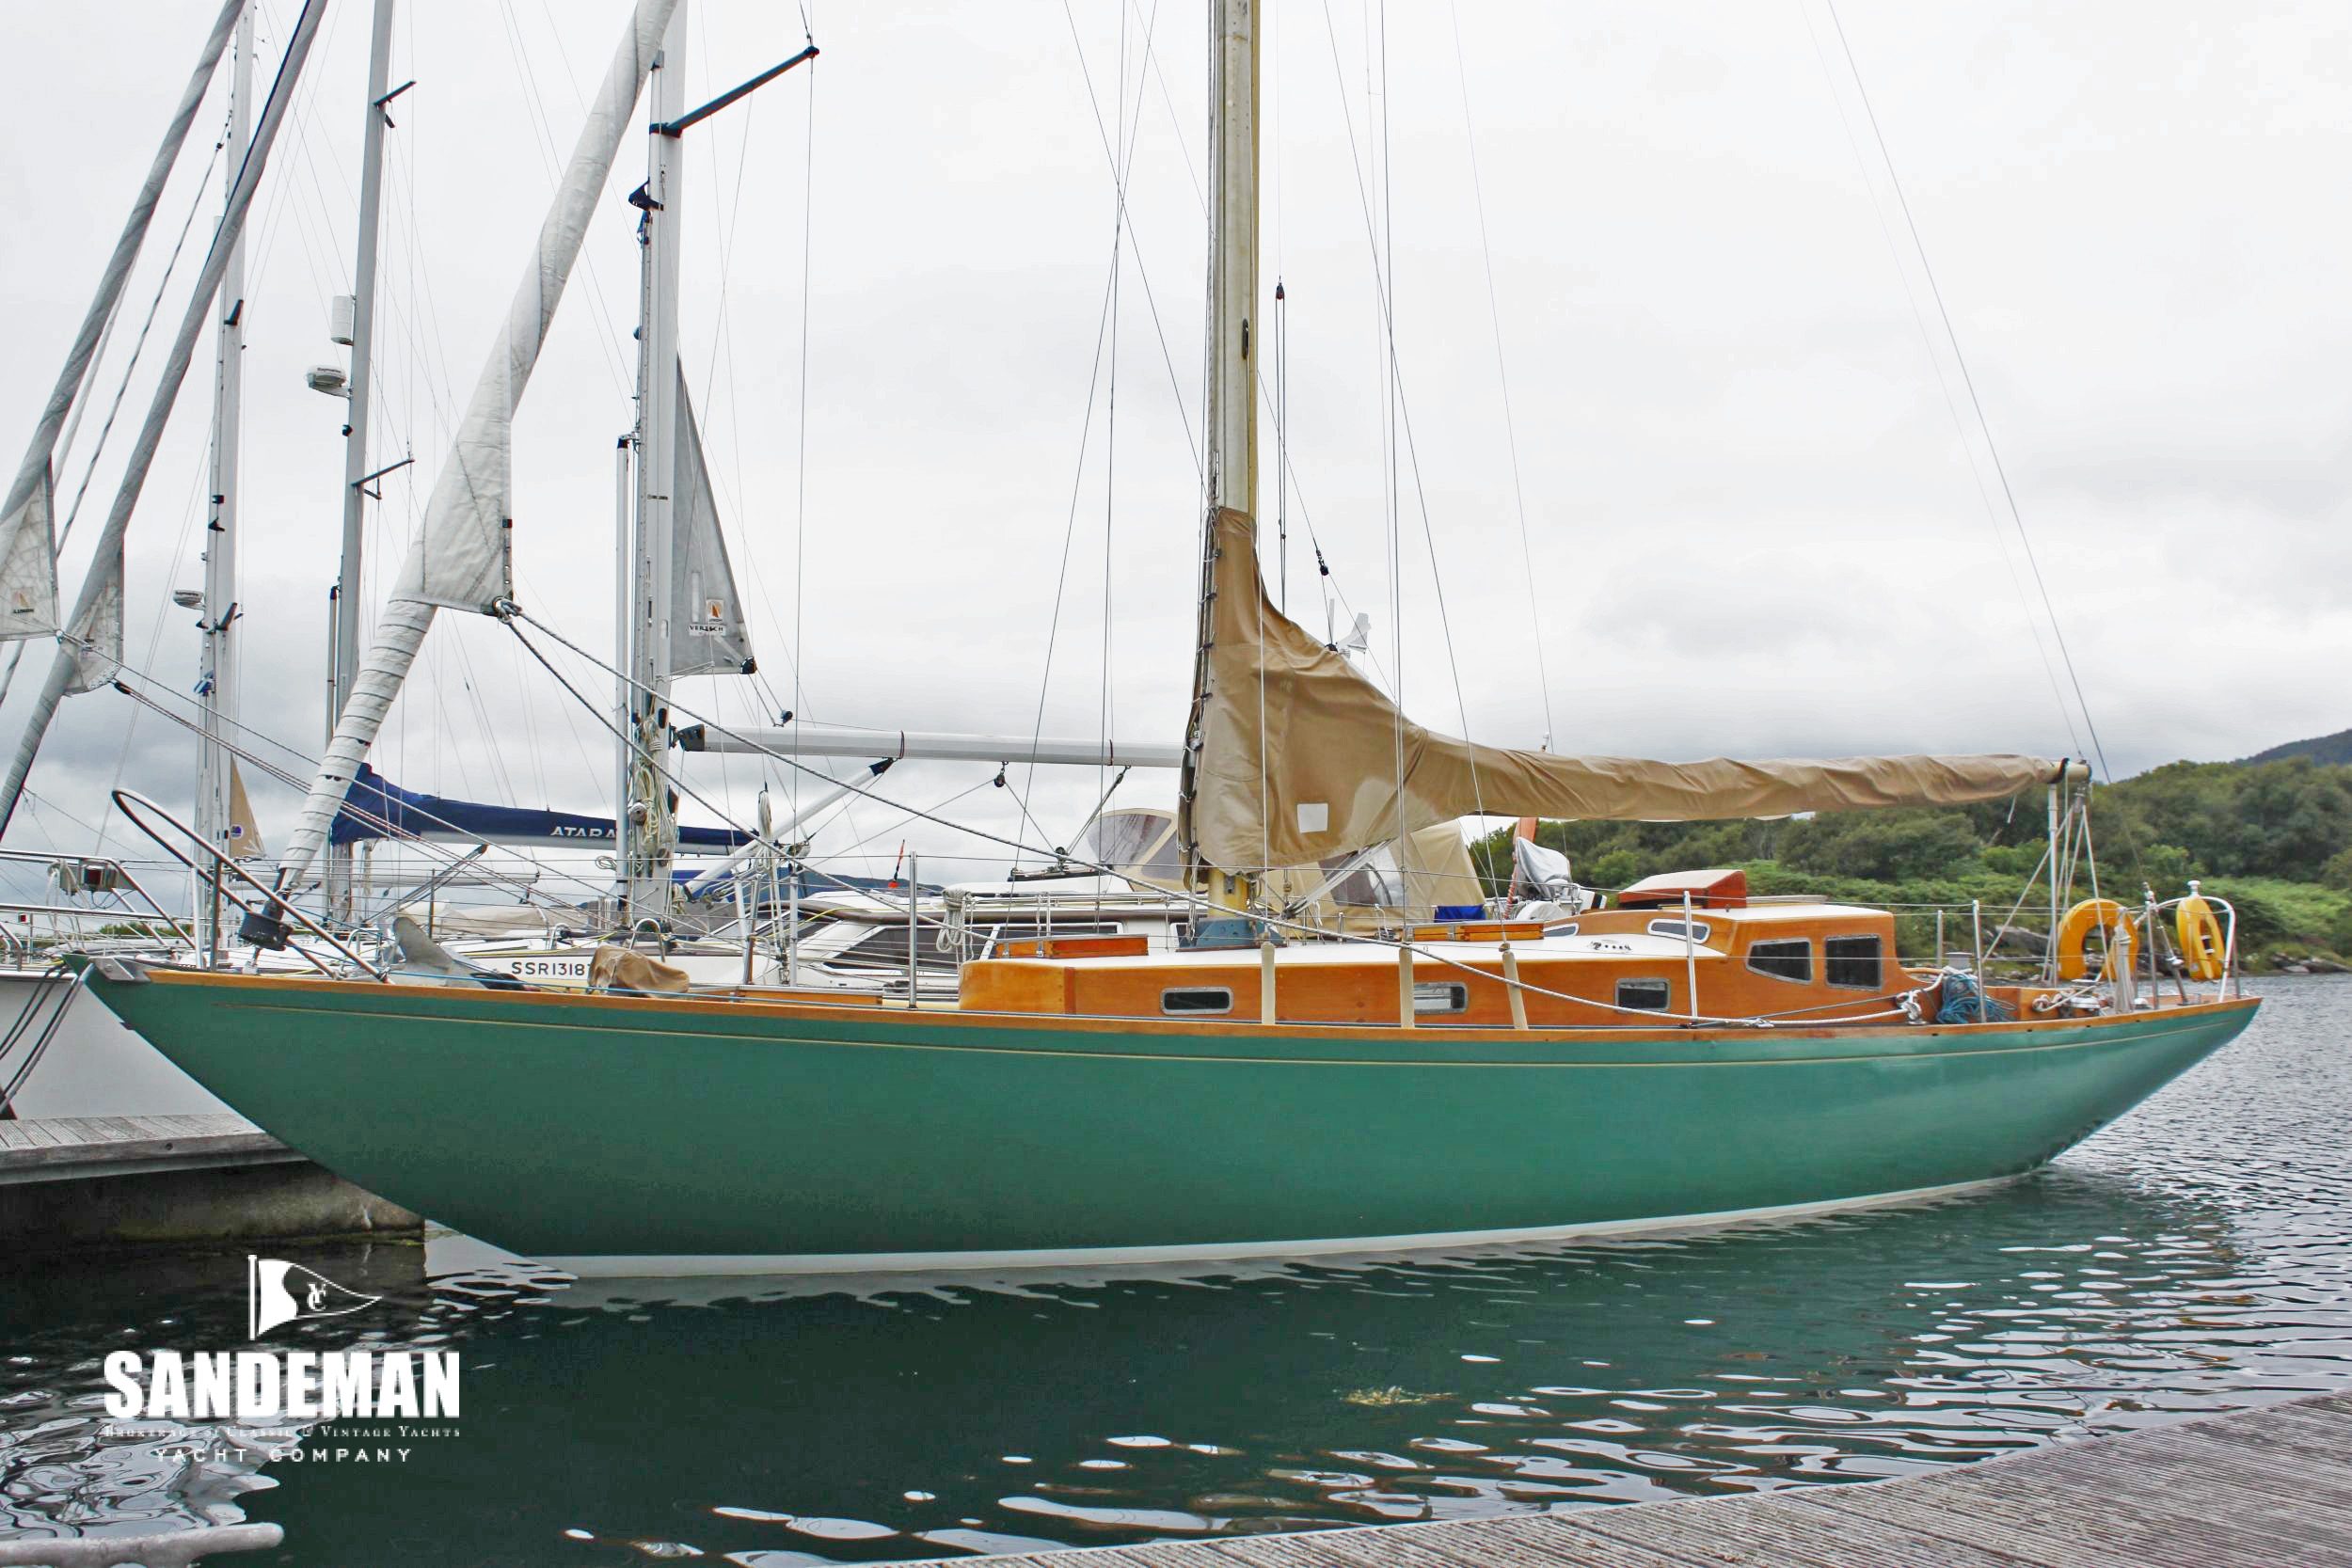 sandeman yachts company